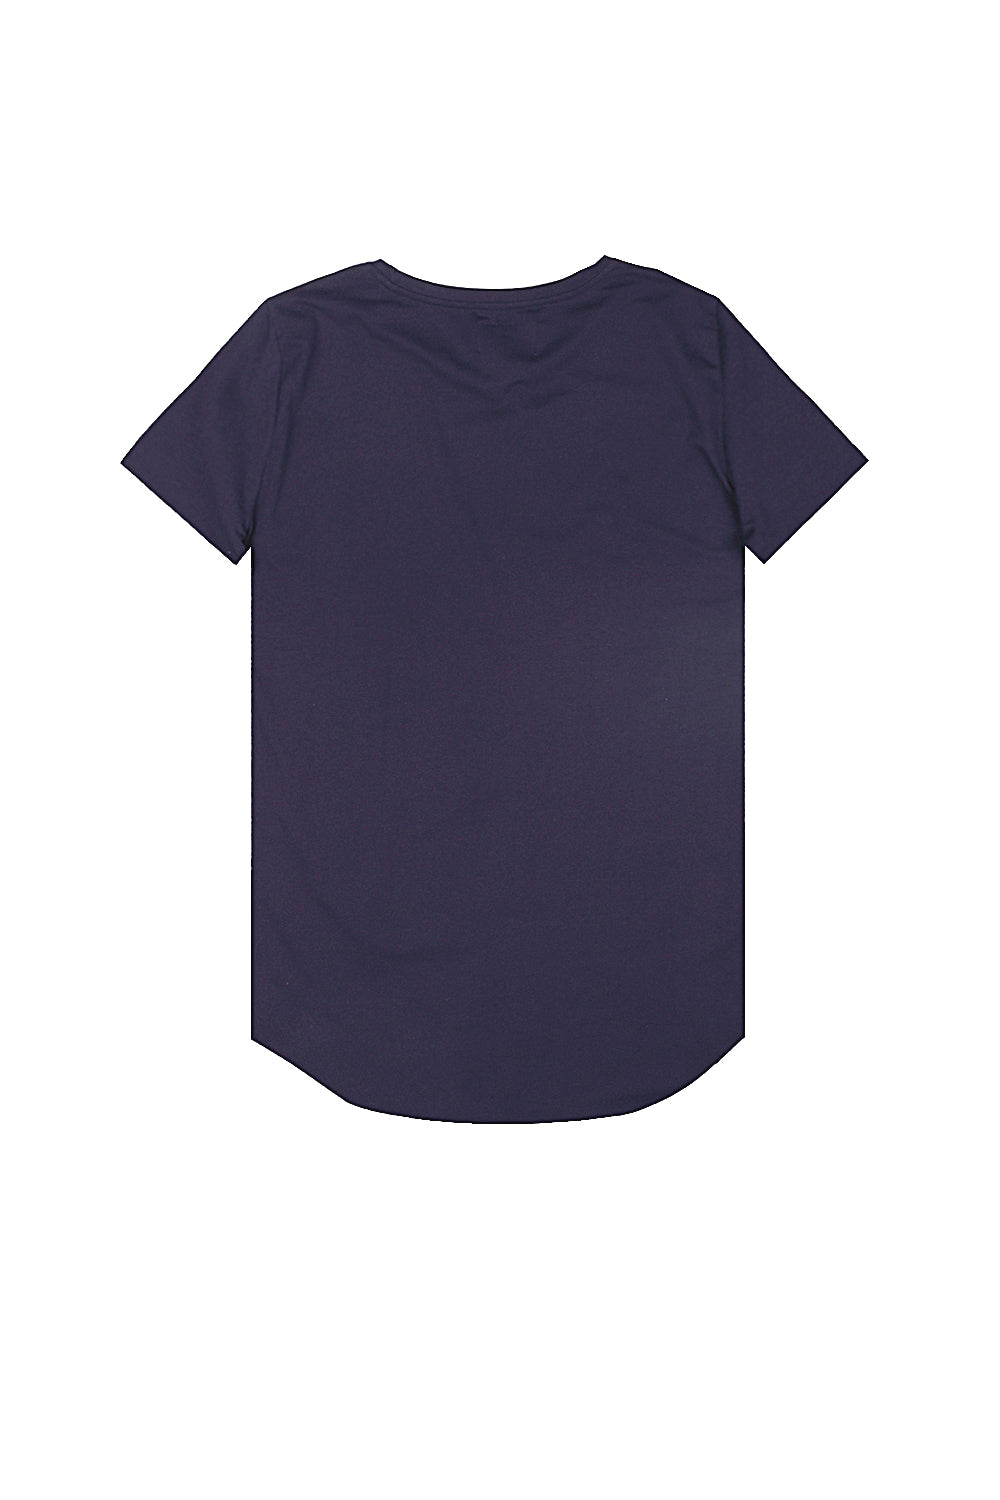 Sixth June - Robe t-shirt unie Femme bleu marine 1836V